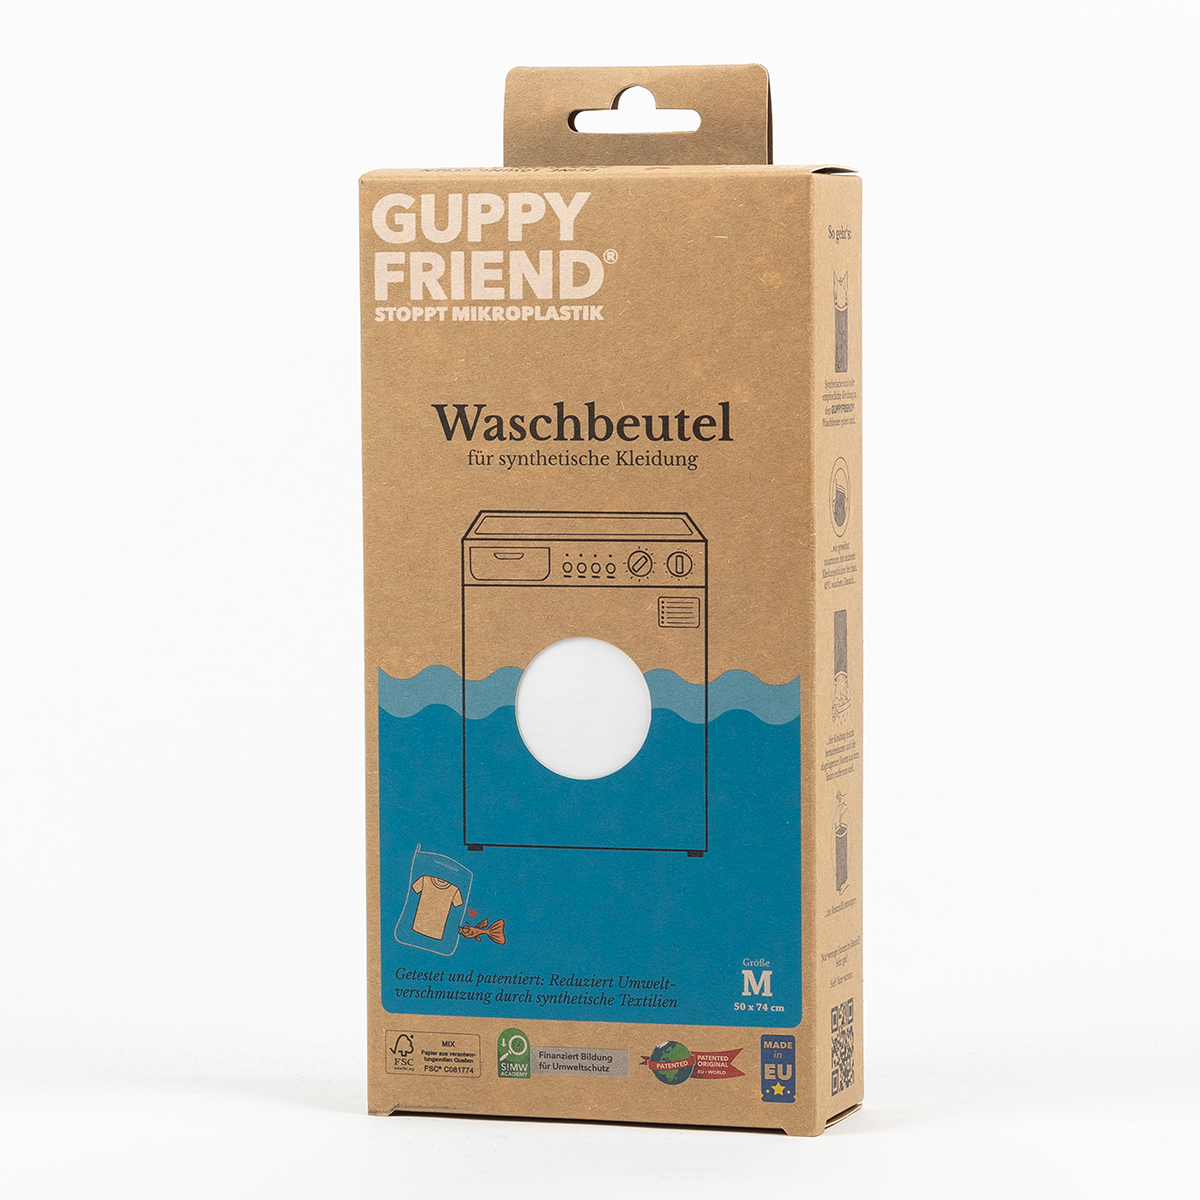 Waschbeutel GUPPYFRIEND - Stopp Mikroplastik